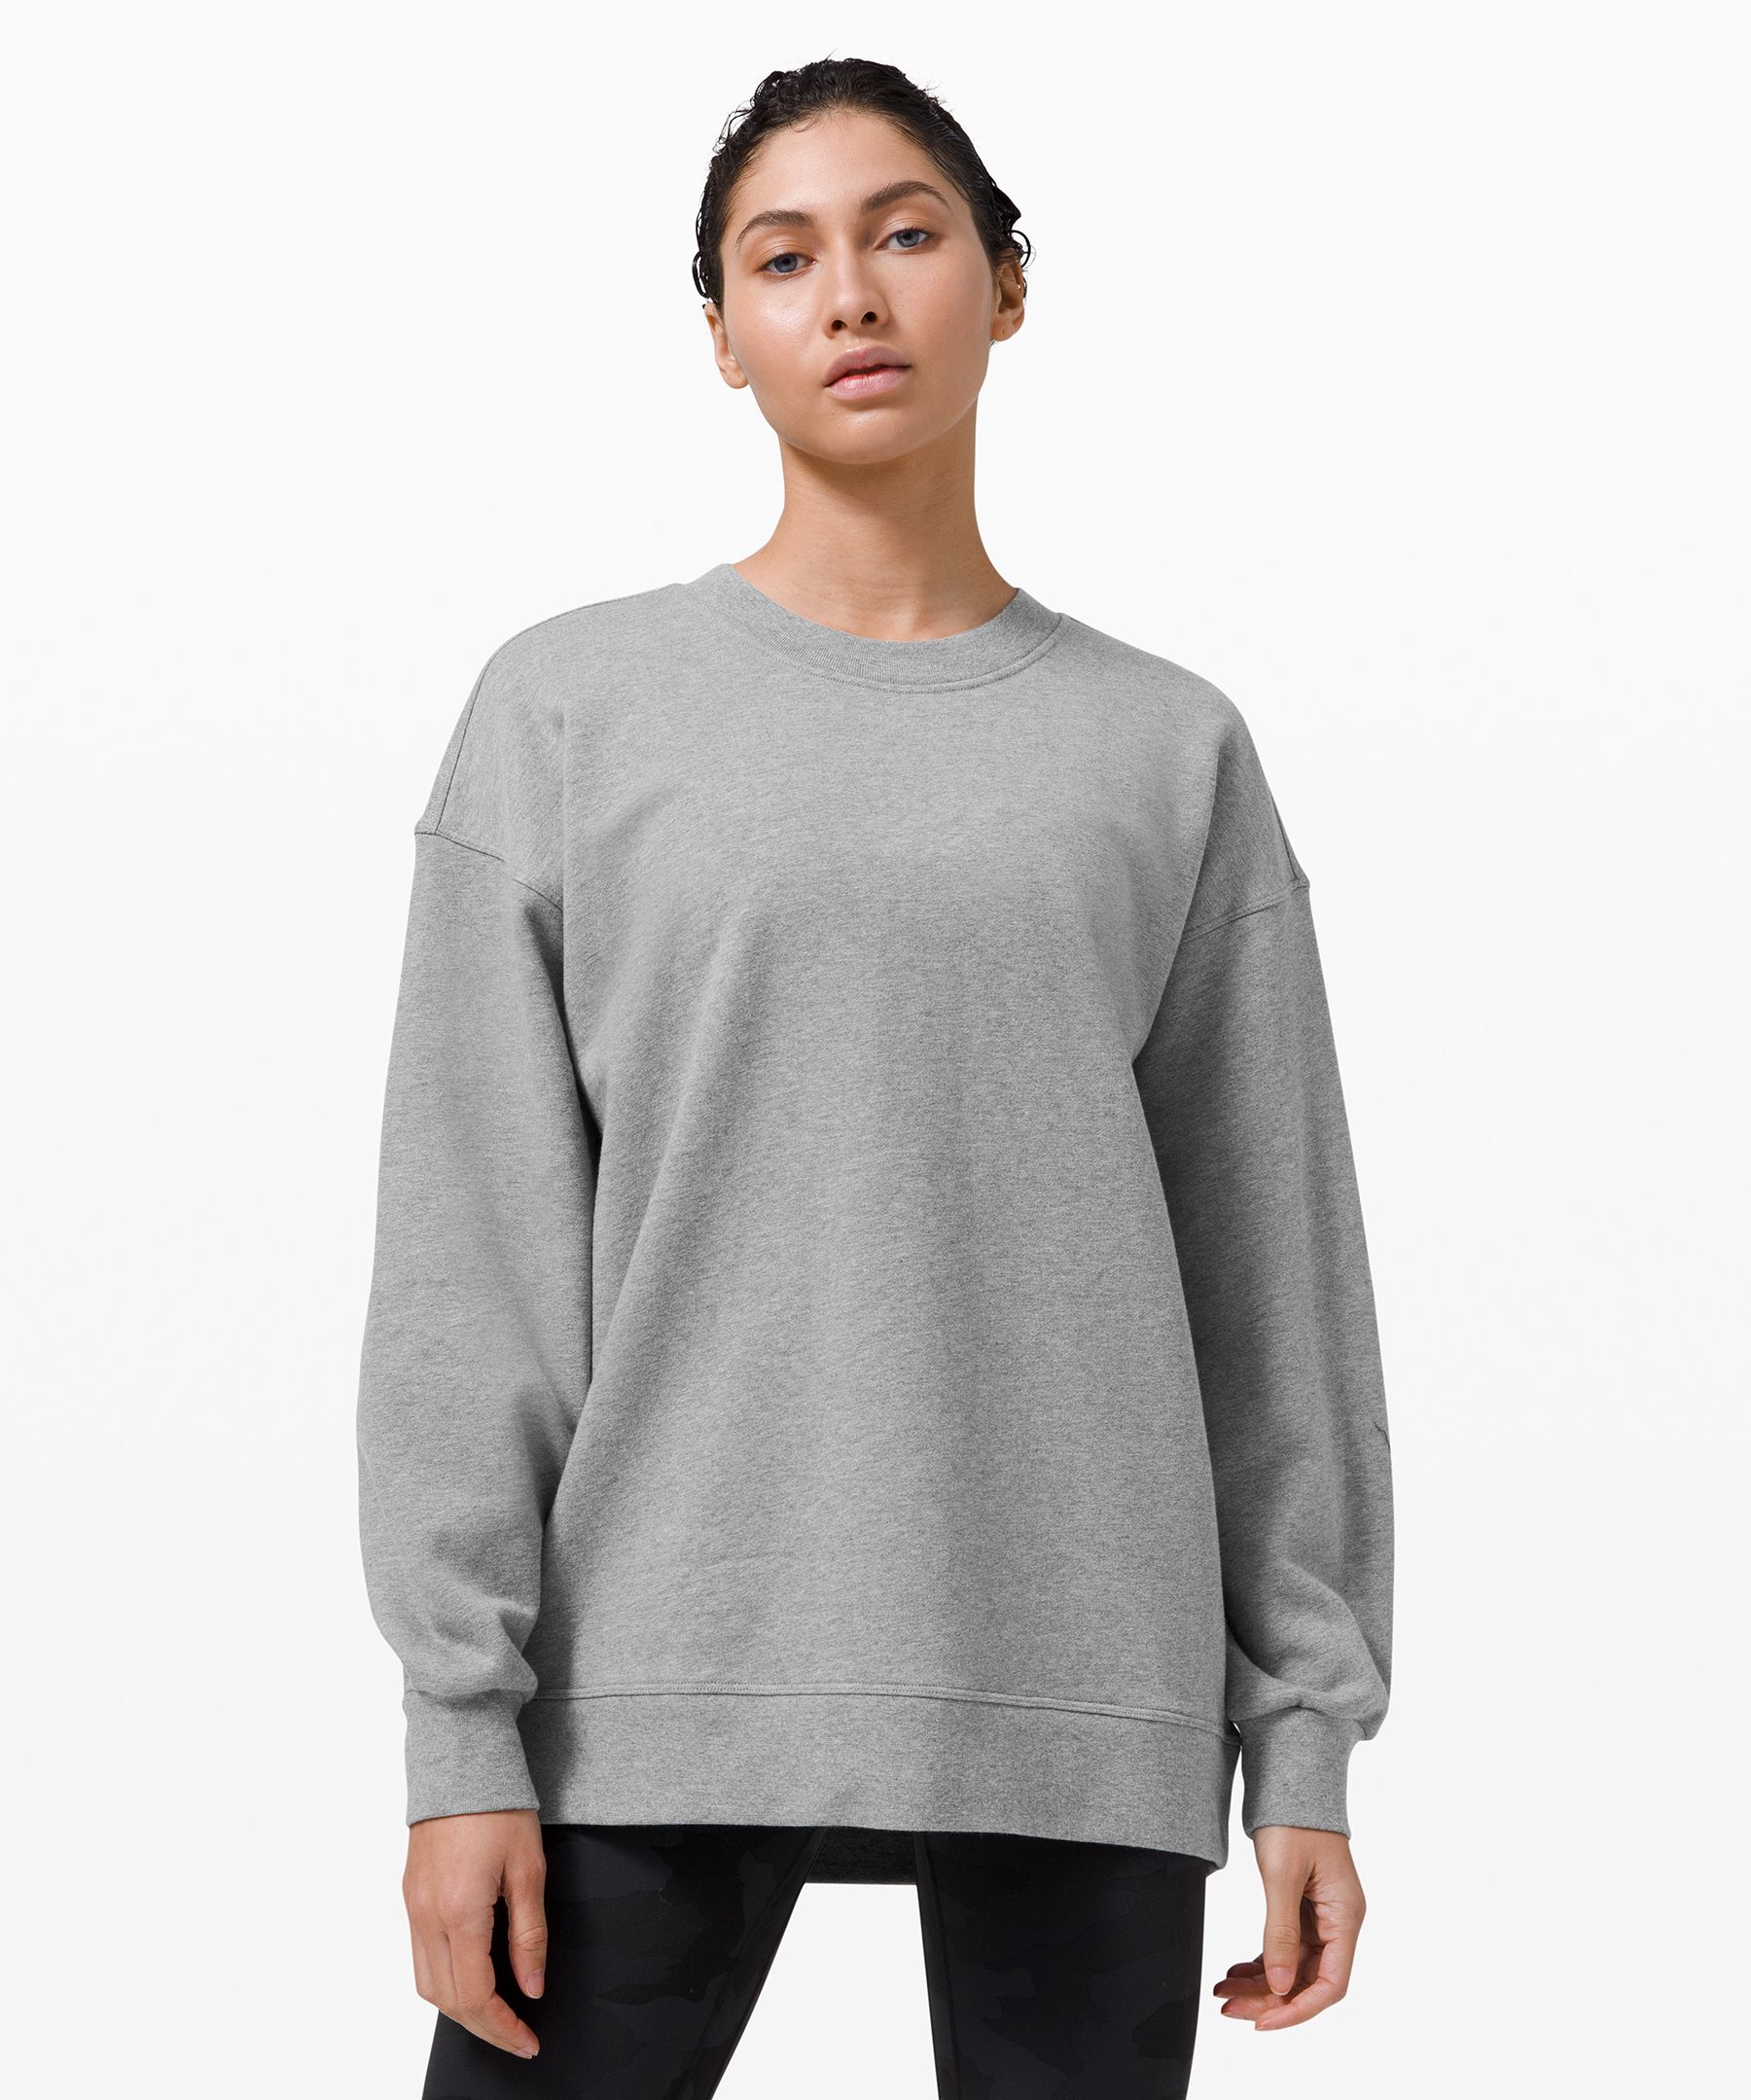 lululemon grey sweatshirt